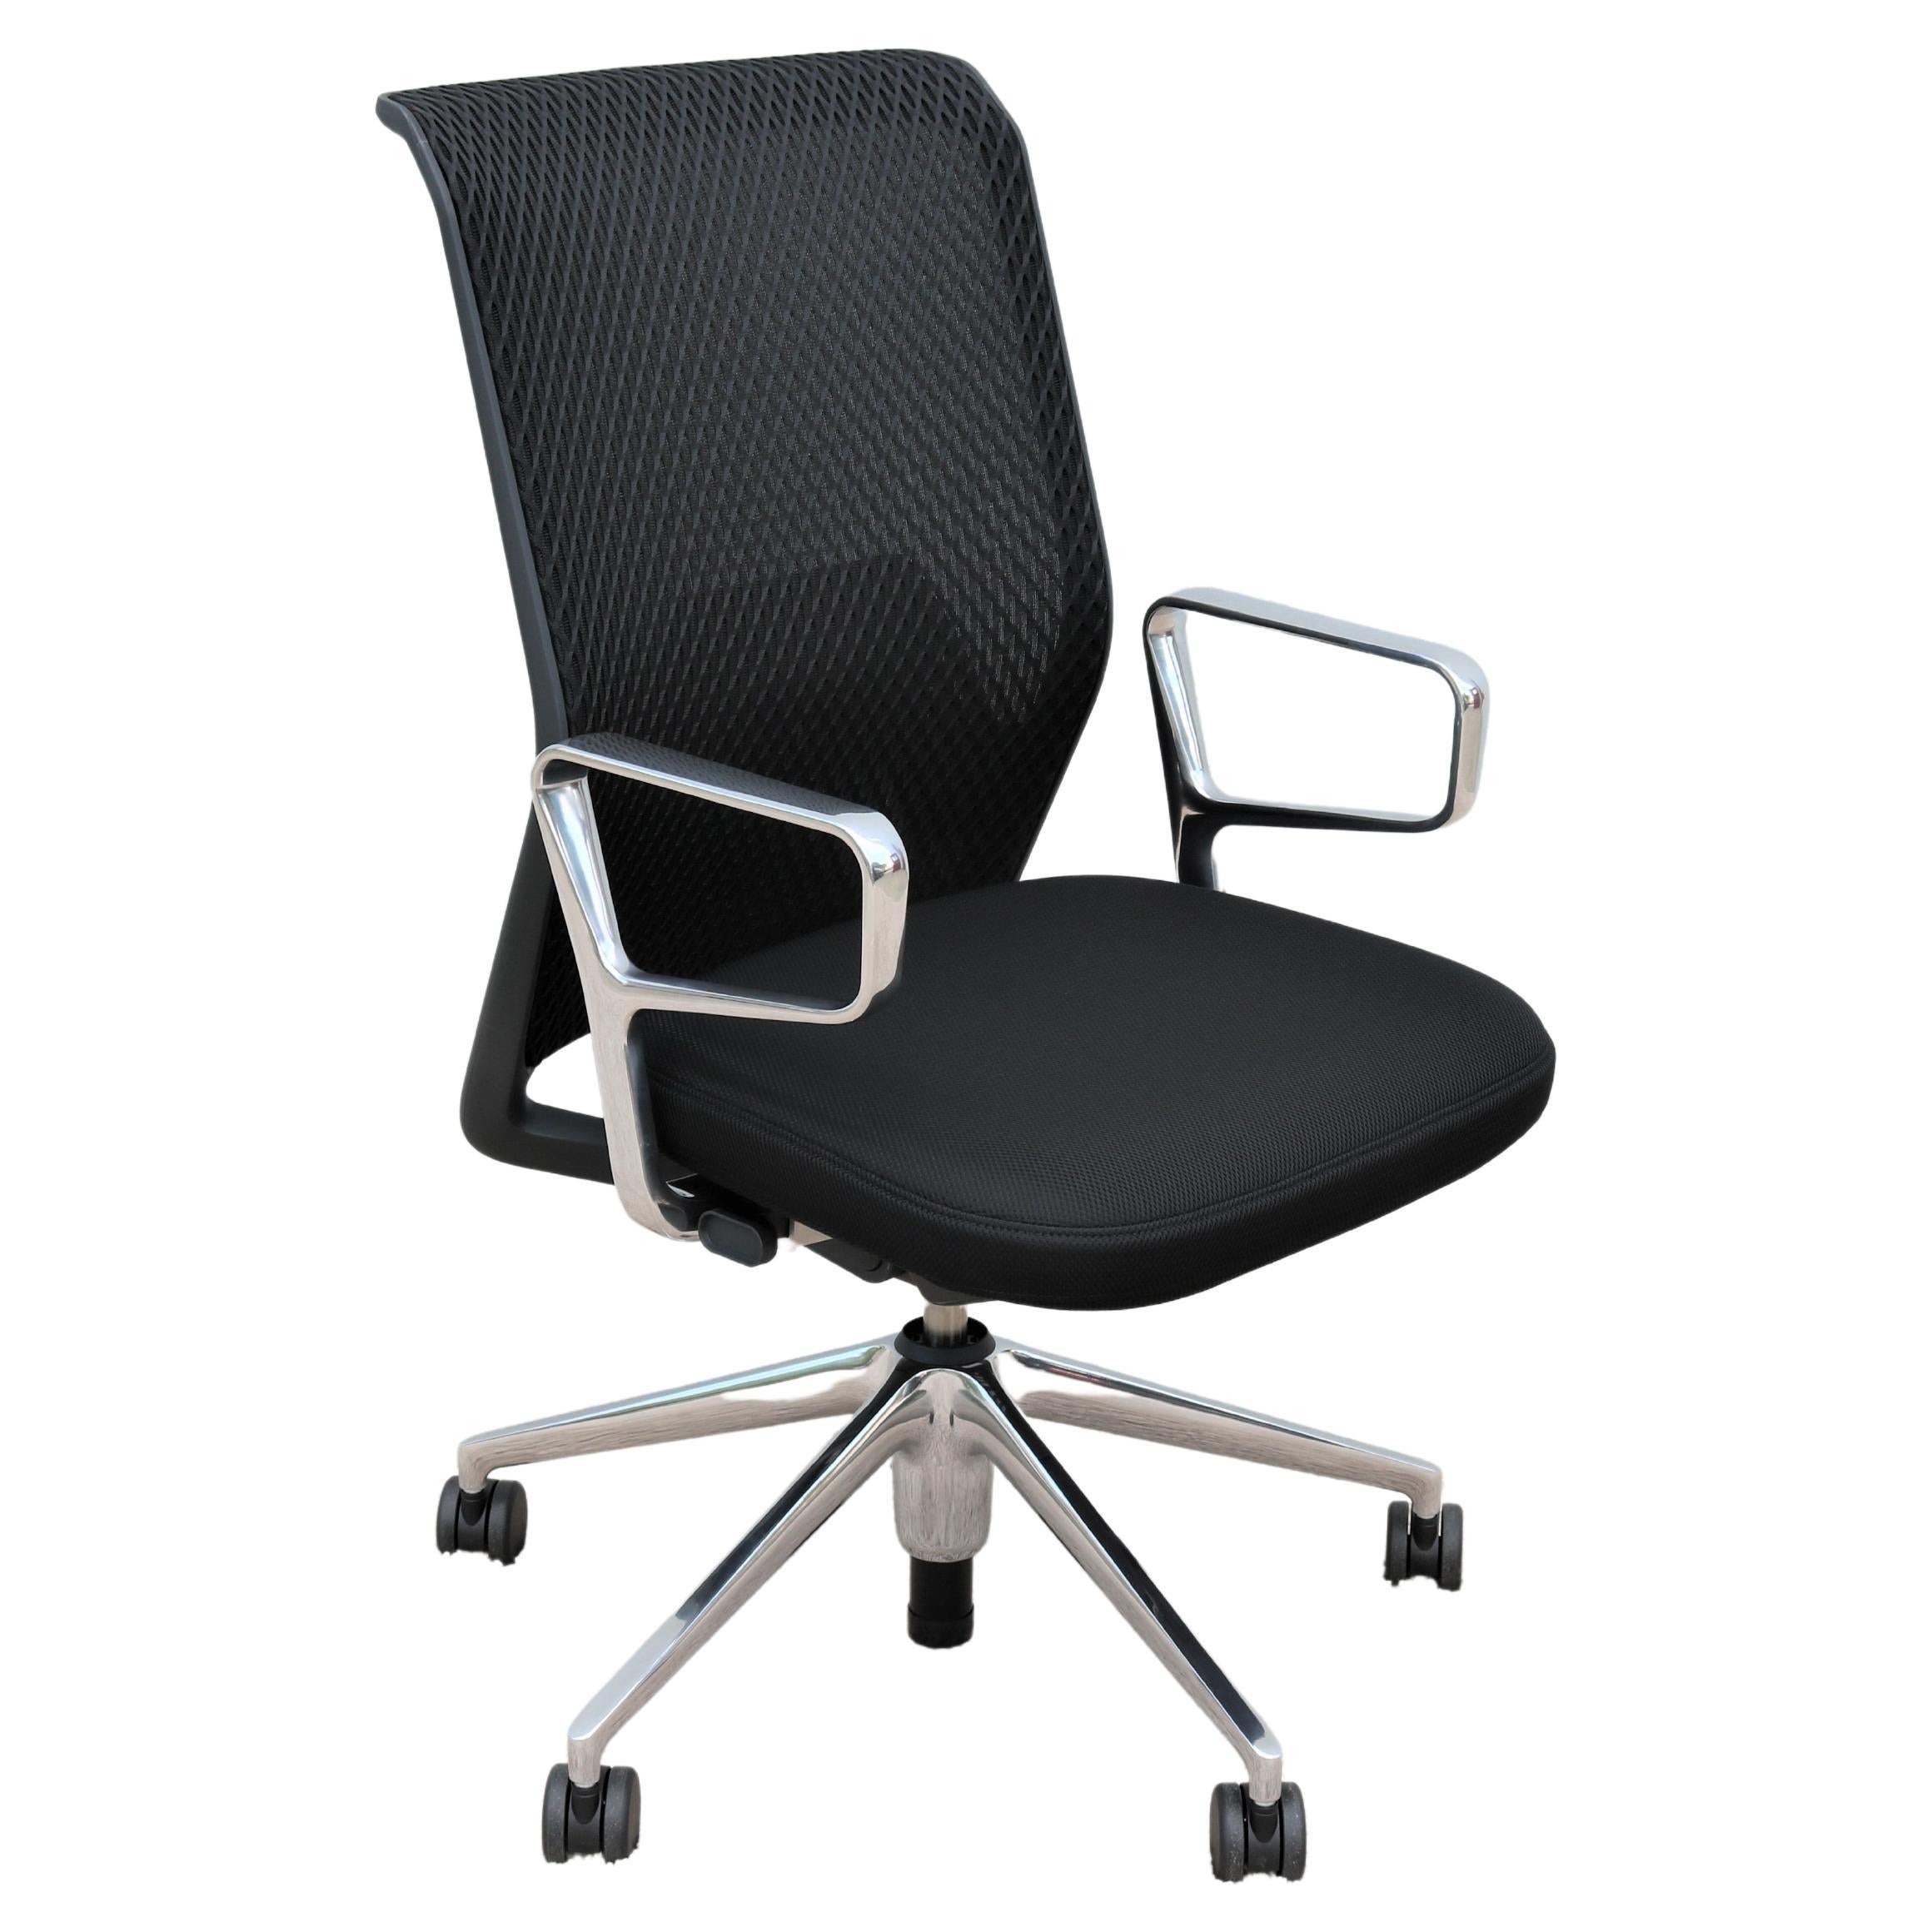 Chaise de bureau noire ergonomique Antonio Citterio pour Vitra, neuve